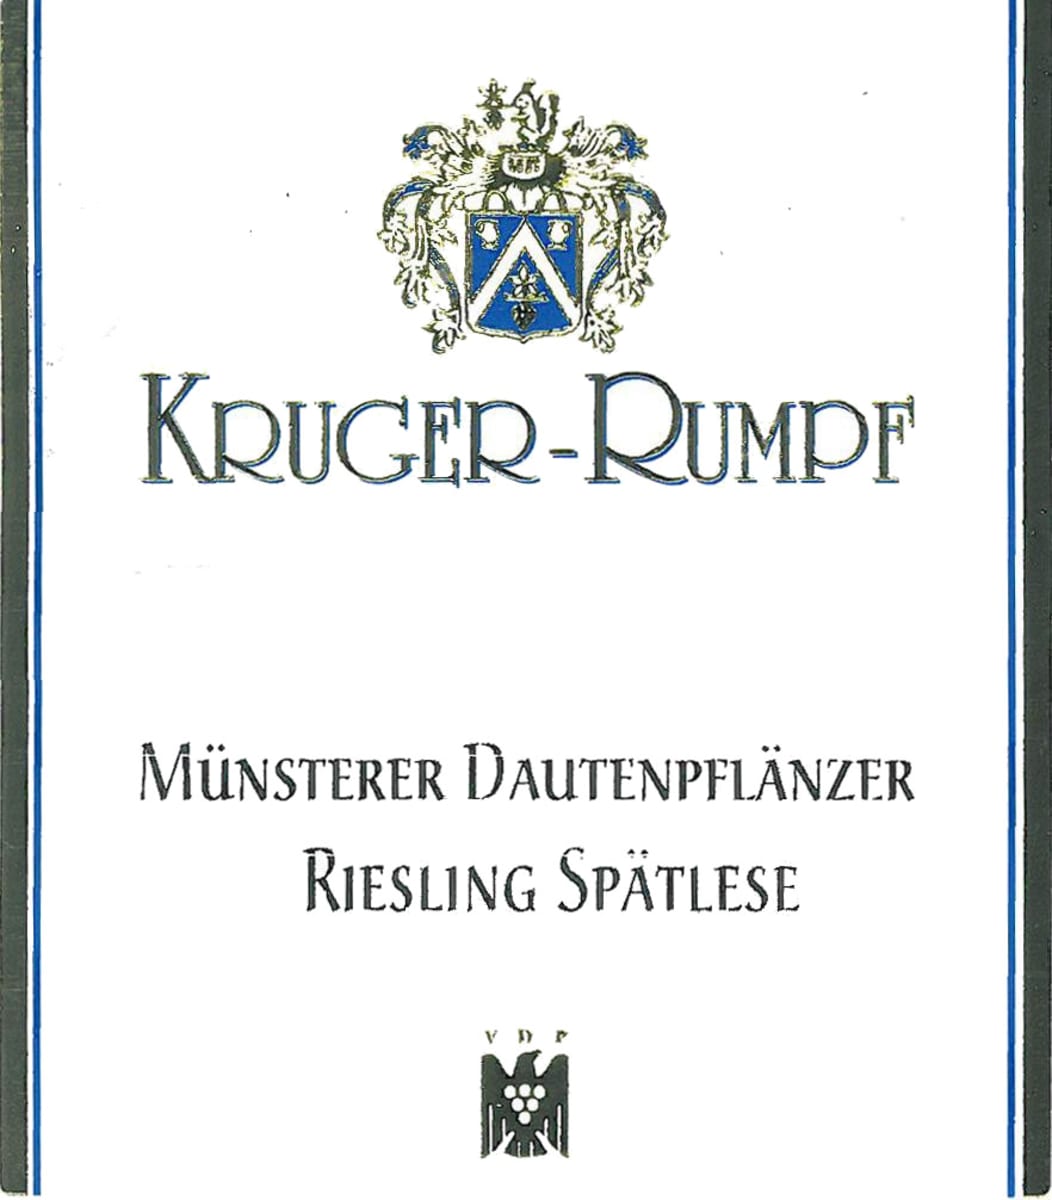 Kruger-Rumpf Munsterer Dautenpflanzer Riesling Spatlese 2004 Front Label